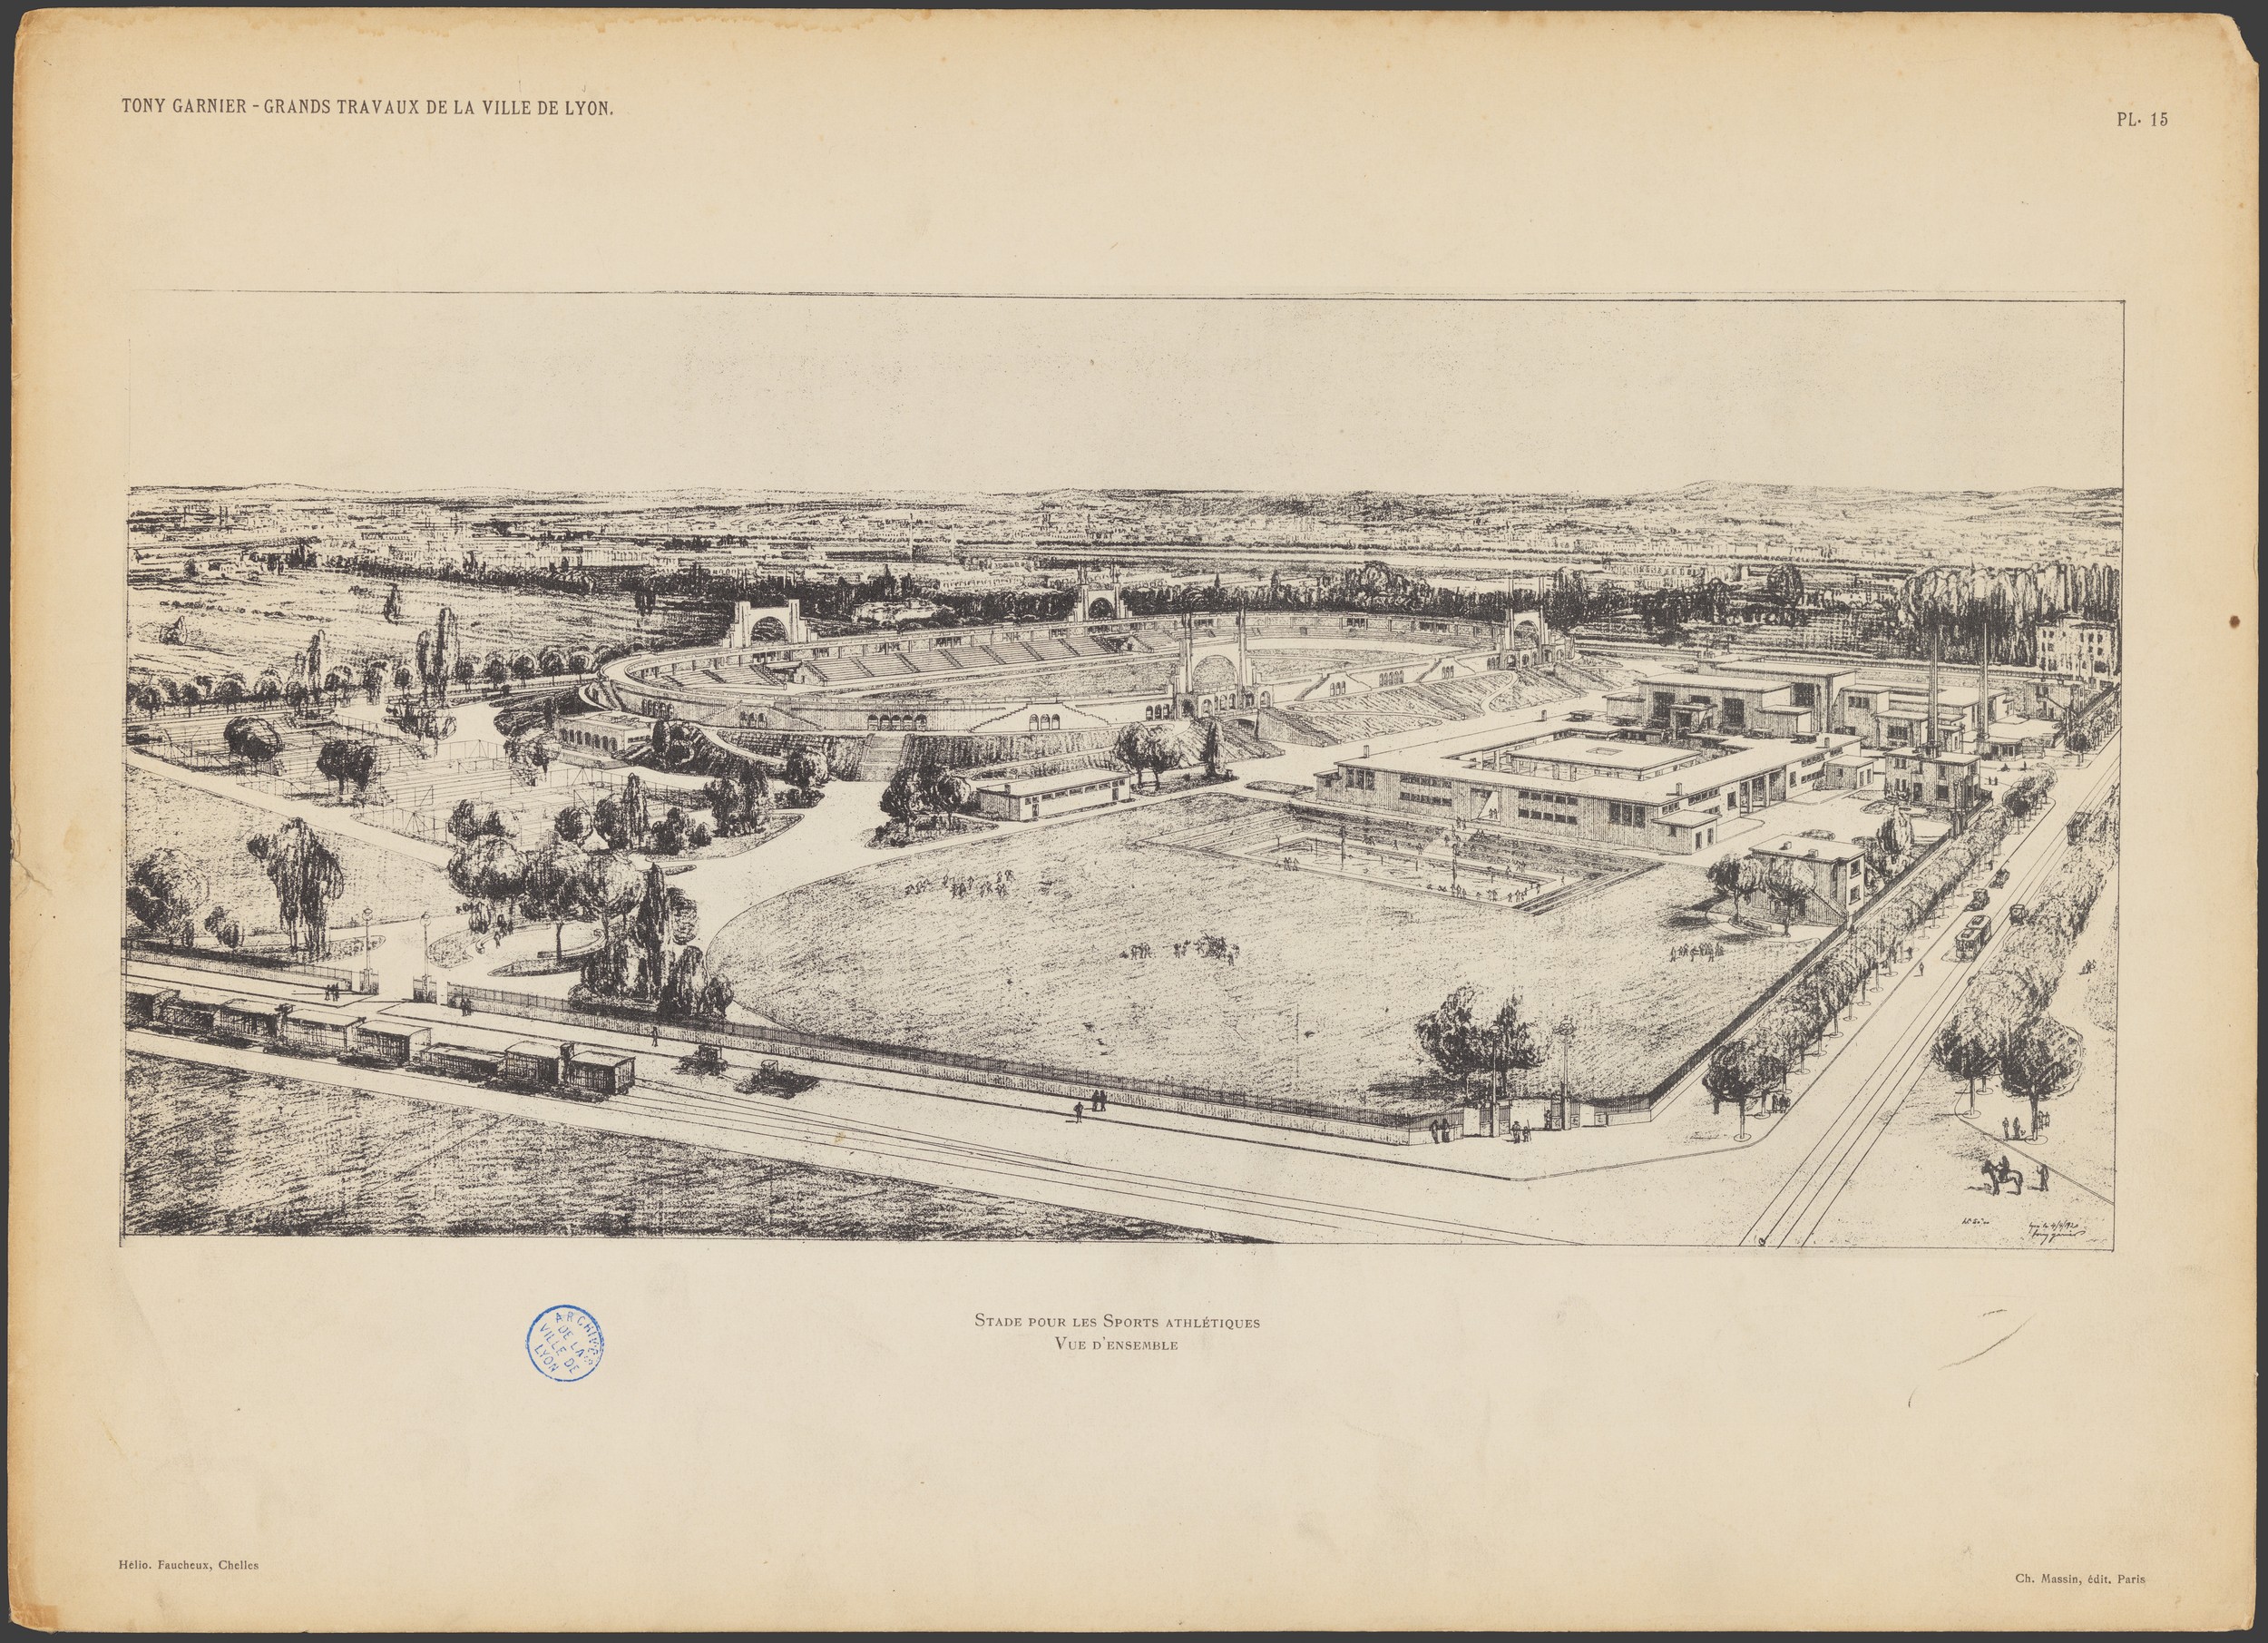 Les grands travaux de la Ville de Lyon par Tony Garnier, stade pour les sports athlétiques : vue d'ensemble (1920, cote : 1C/450461, pl. 15)